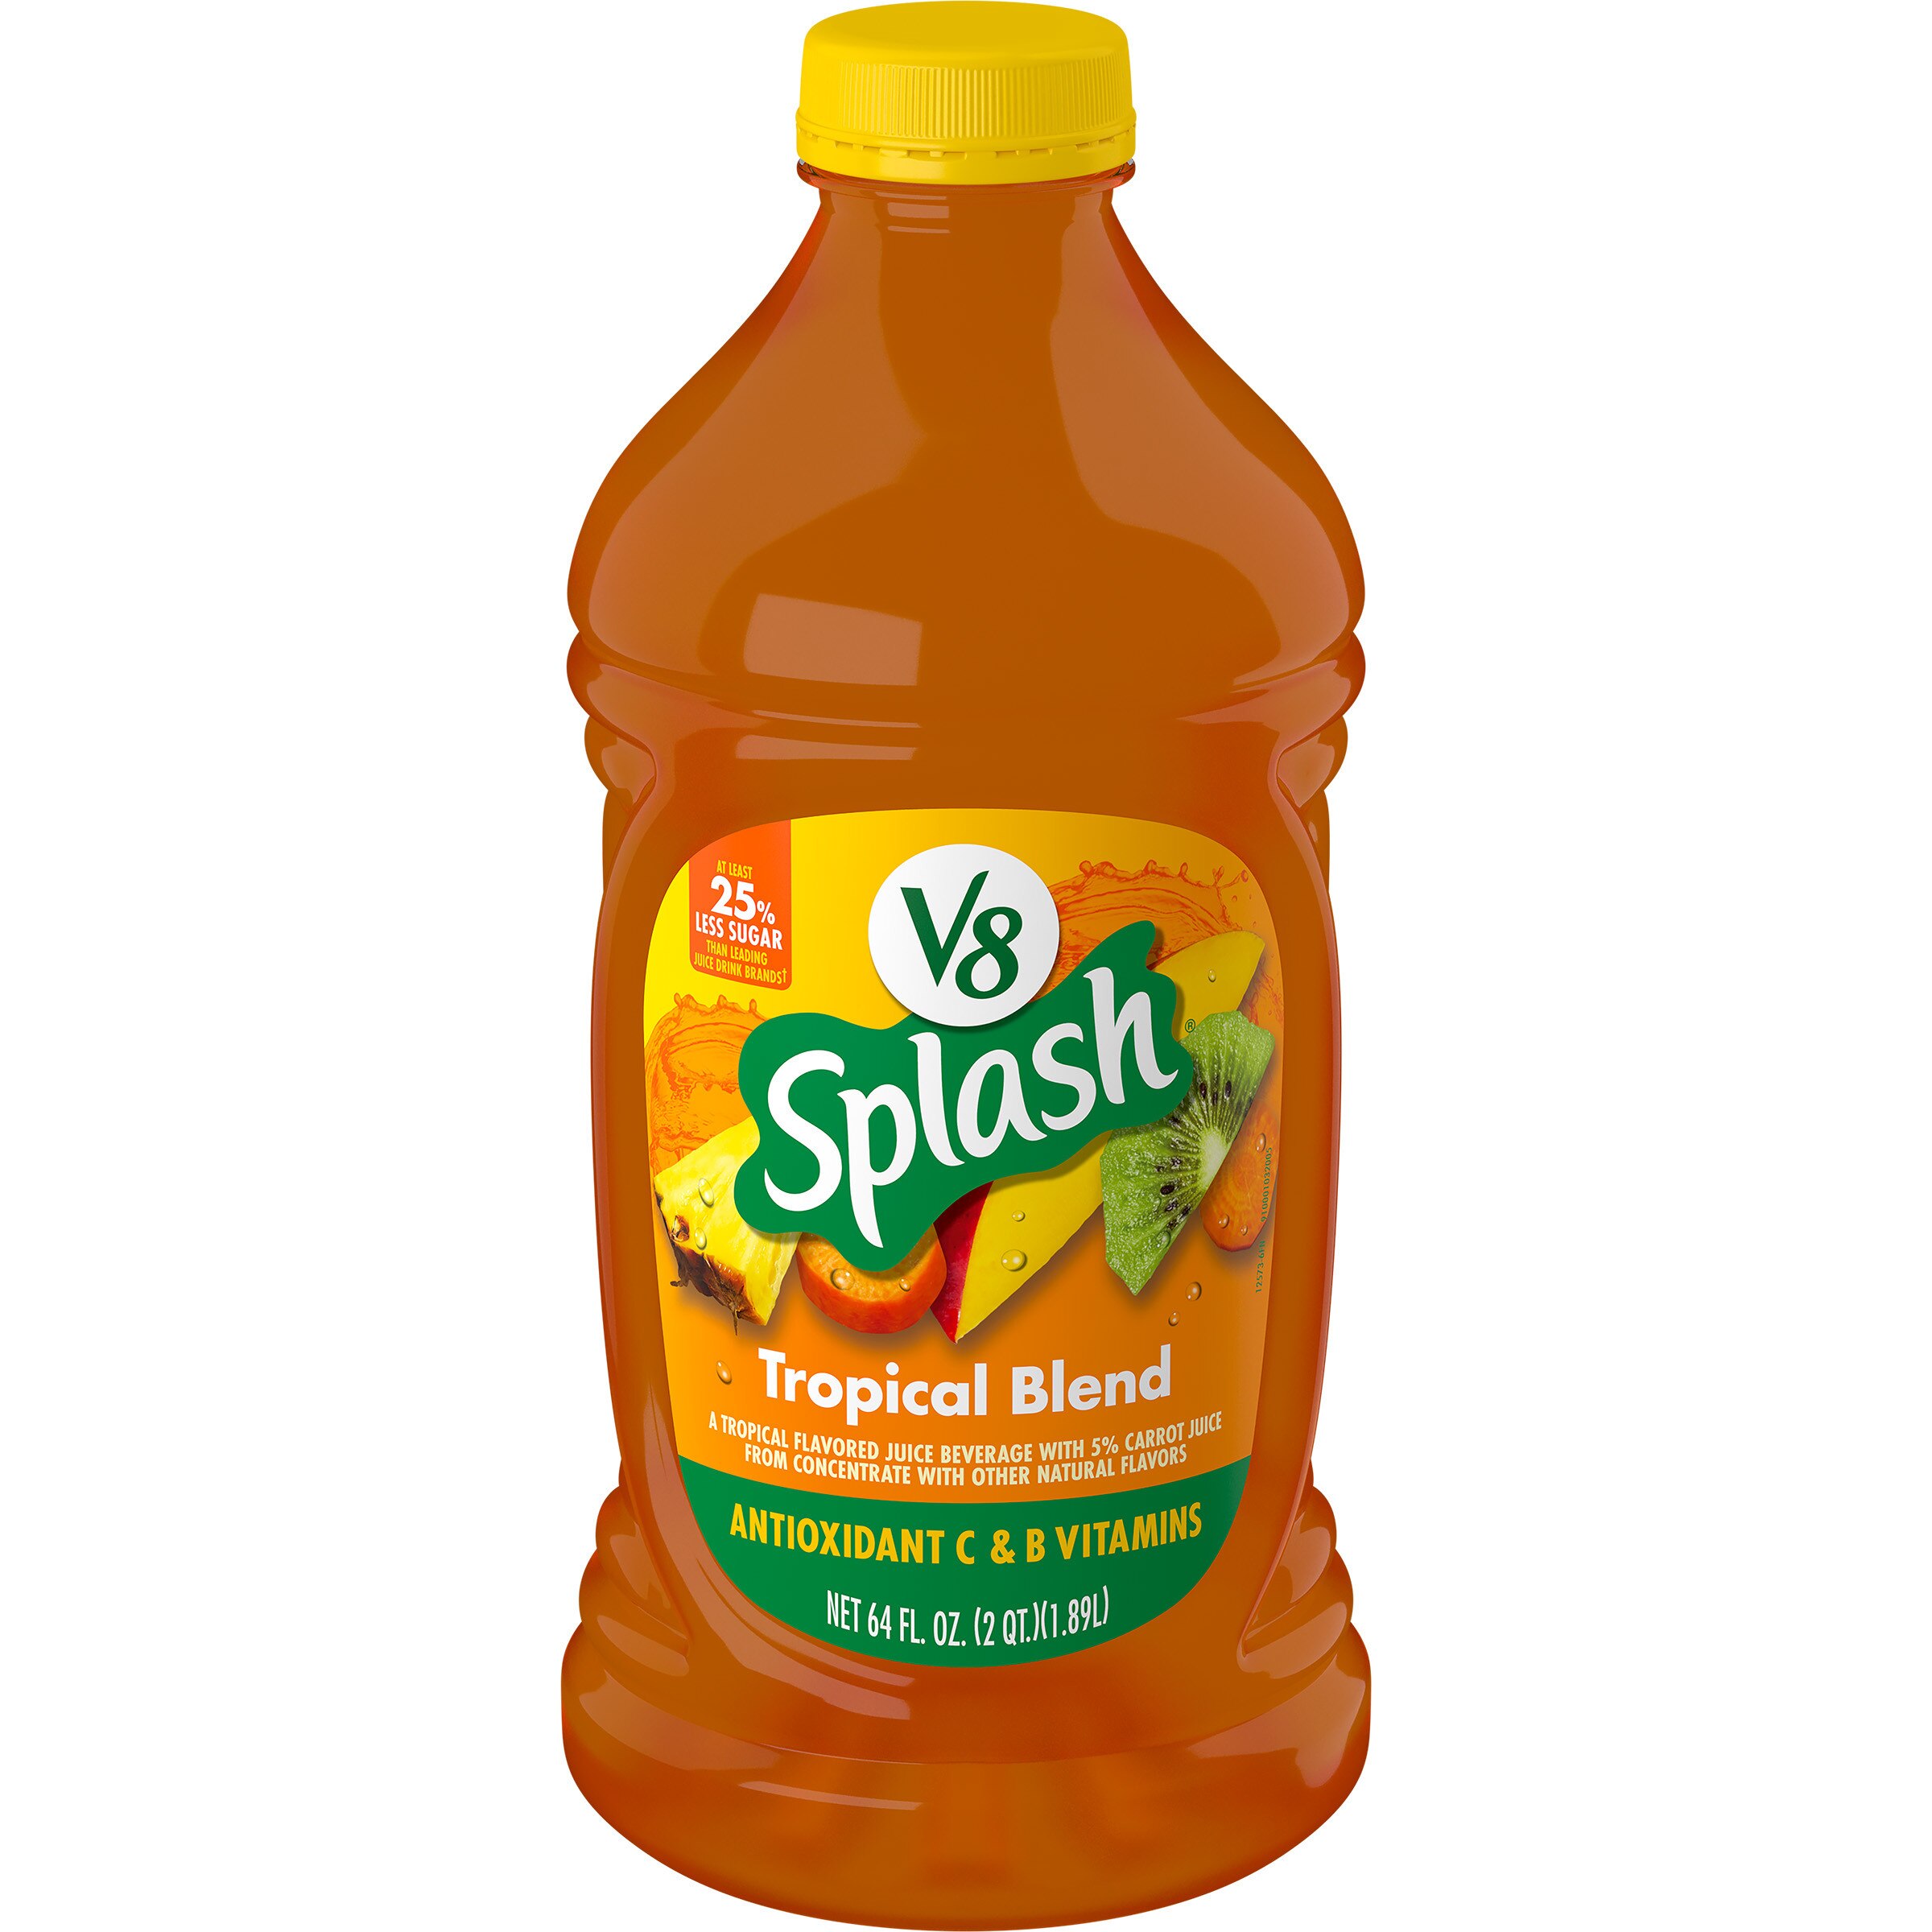 V8 Splash Tropical Fruit Blend Flavored Juice Beverage, 64 FL oz